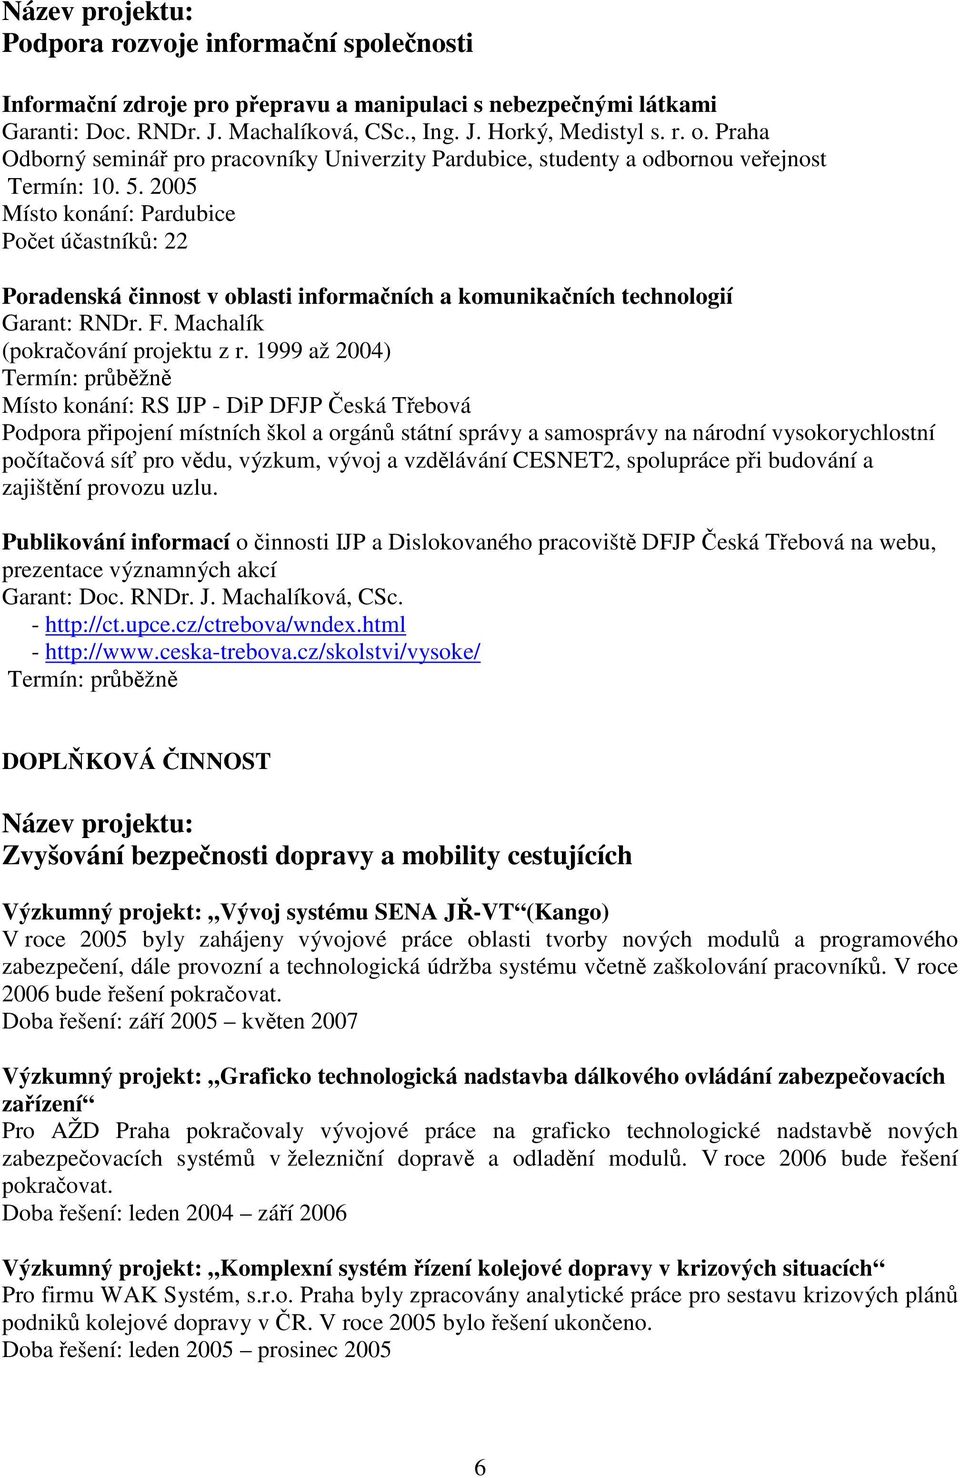 2005 Místo konání: Pardubice Počet účastníků: 22 Poradenská činnost v oblasti informačních a komunikačních technologií Garant: RNDr. F. Machalík (pokračování projektu z r.